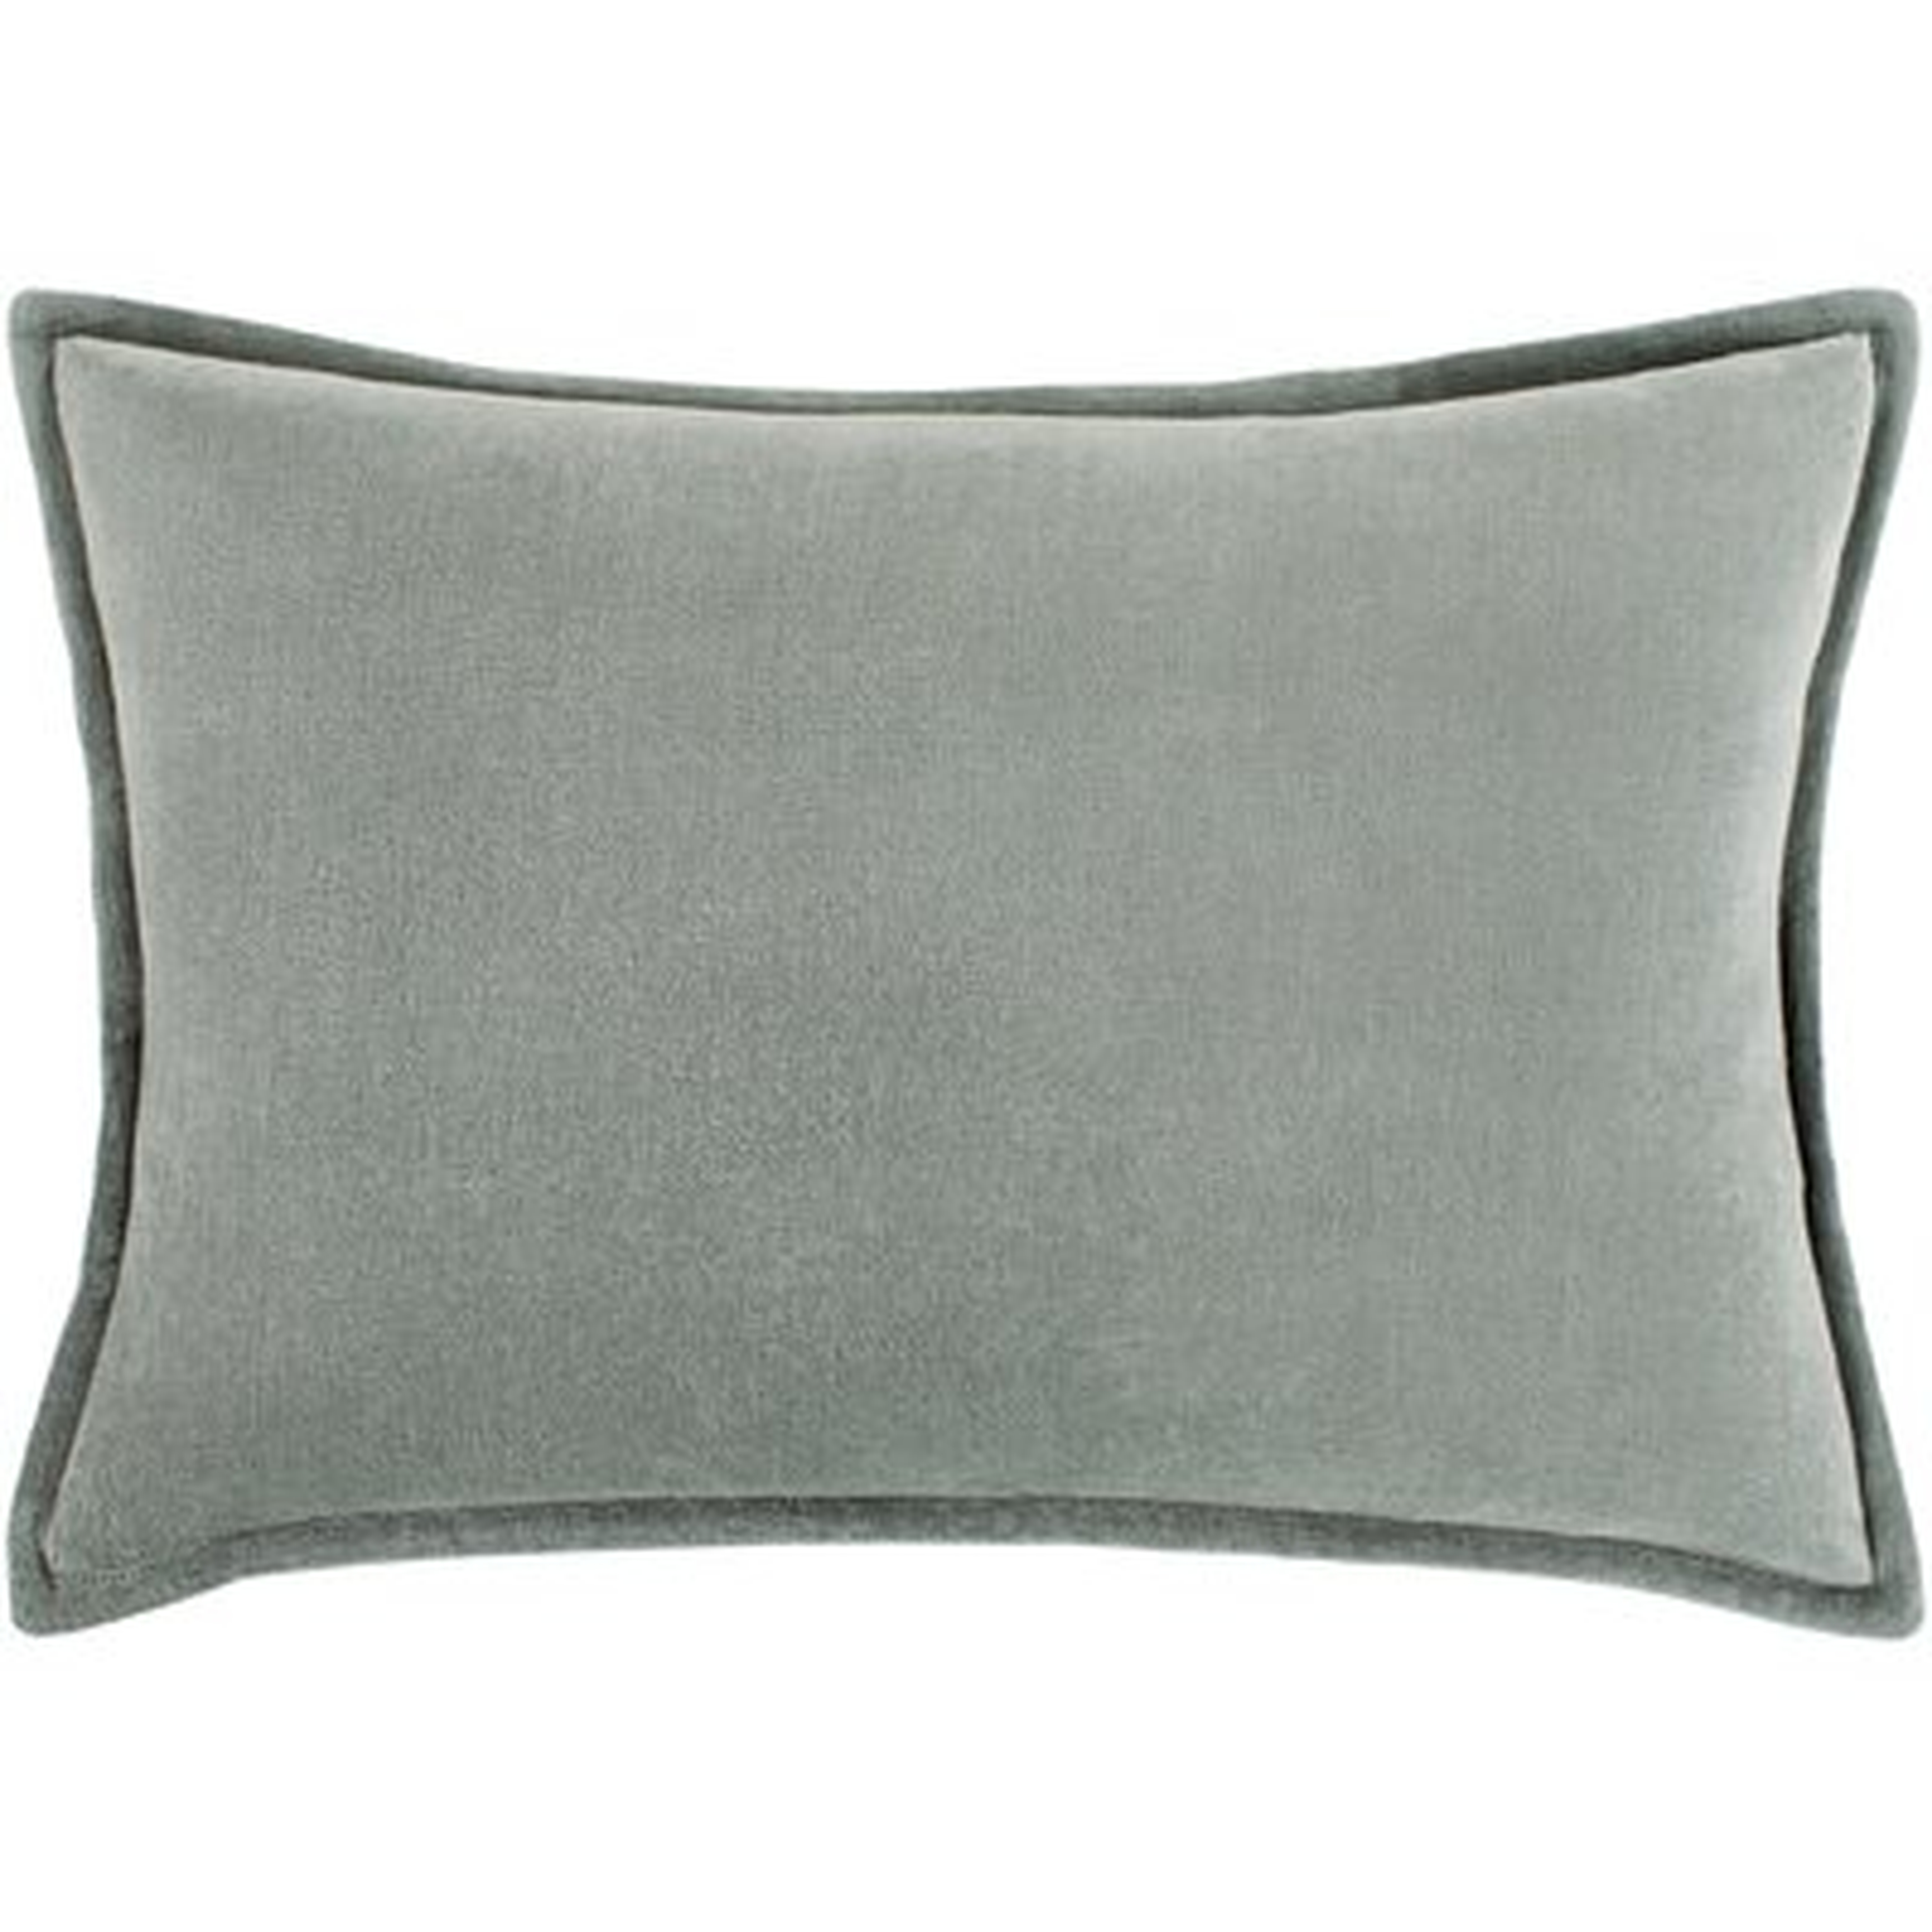 Montague Rectangular Velvet Lumbar Pillow Cover & Insert, Sea Foam, 19" x 13" - AllModern